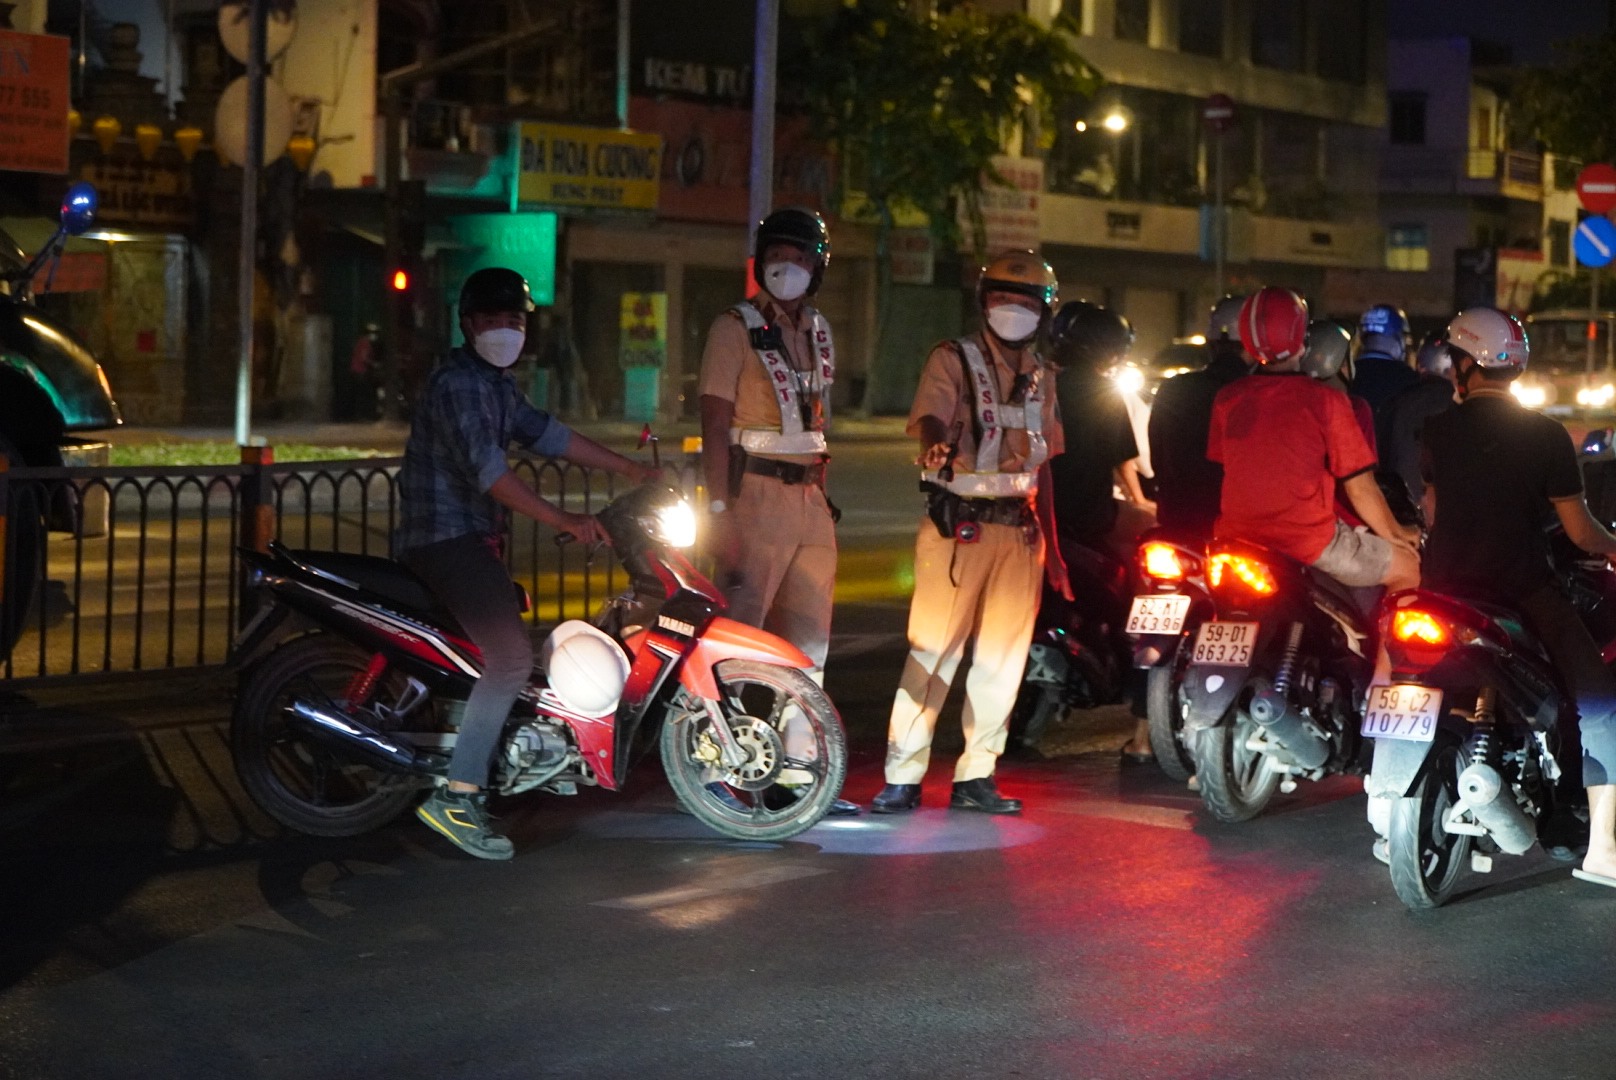 Khoảng 23h, Đội phát hiện anh Lê Văn Hạp (huyện Bình Chánh) điều khiển xe qua chốt kiểm soát có biểu hiện nghi vấn nên tiến hành yêu cầu dừng xe để kiểm tra.